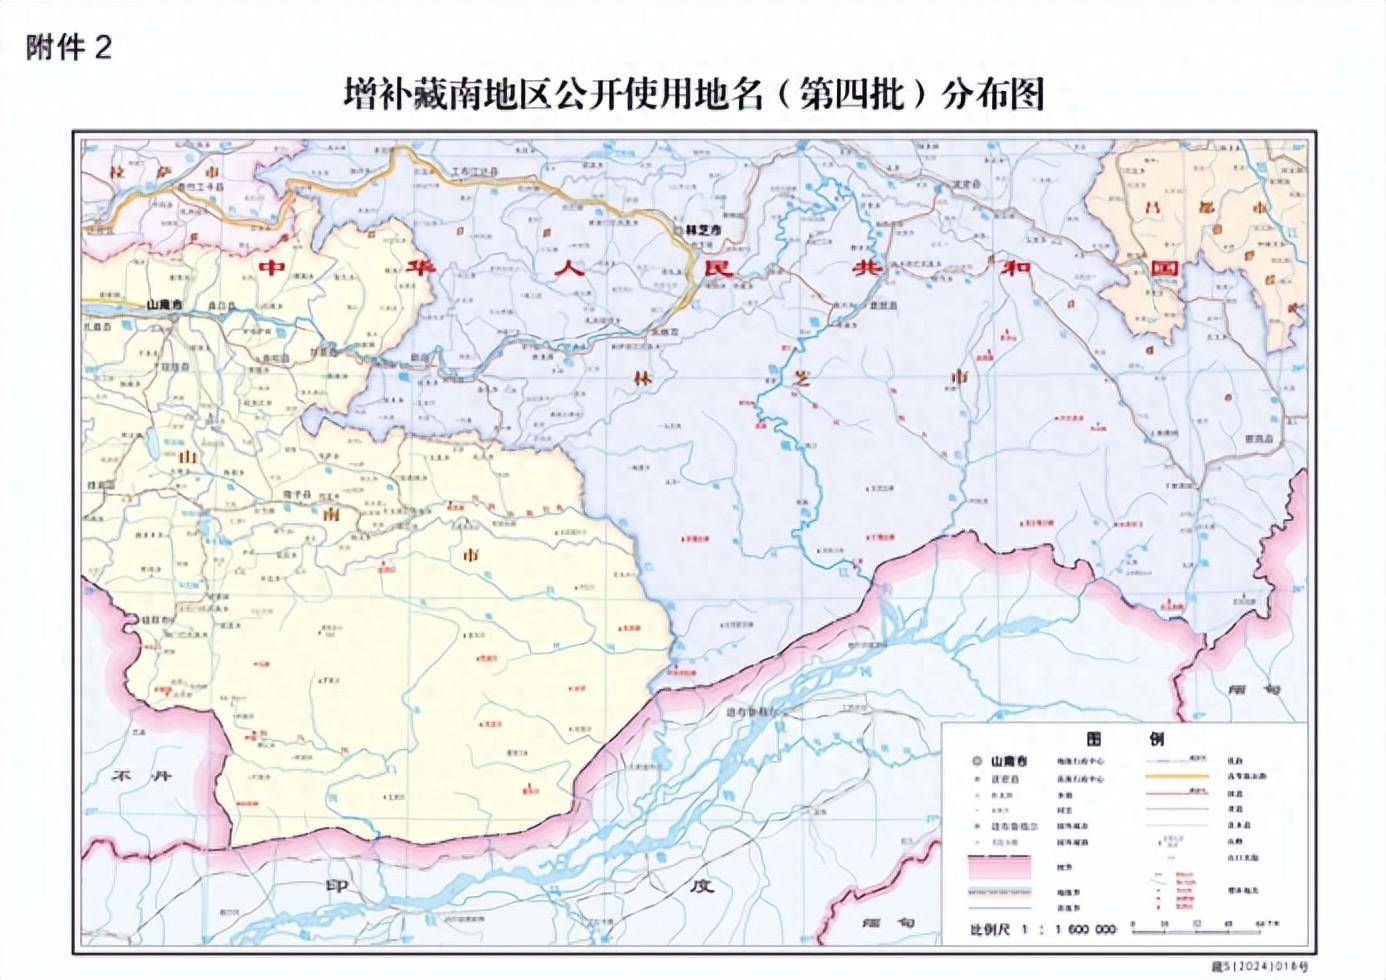 藏南30个地名,中方重新标准化,警告印度是其一,中方还另有谋略